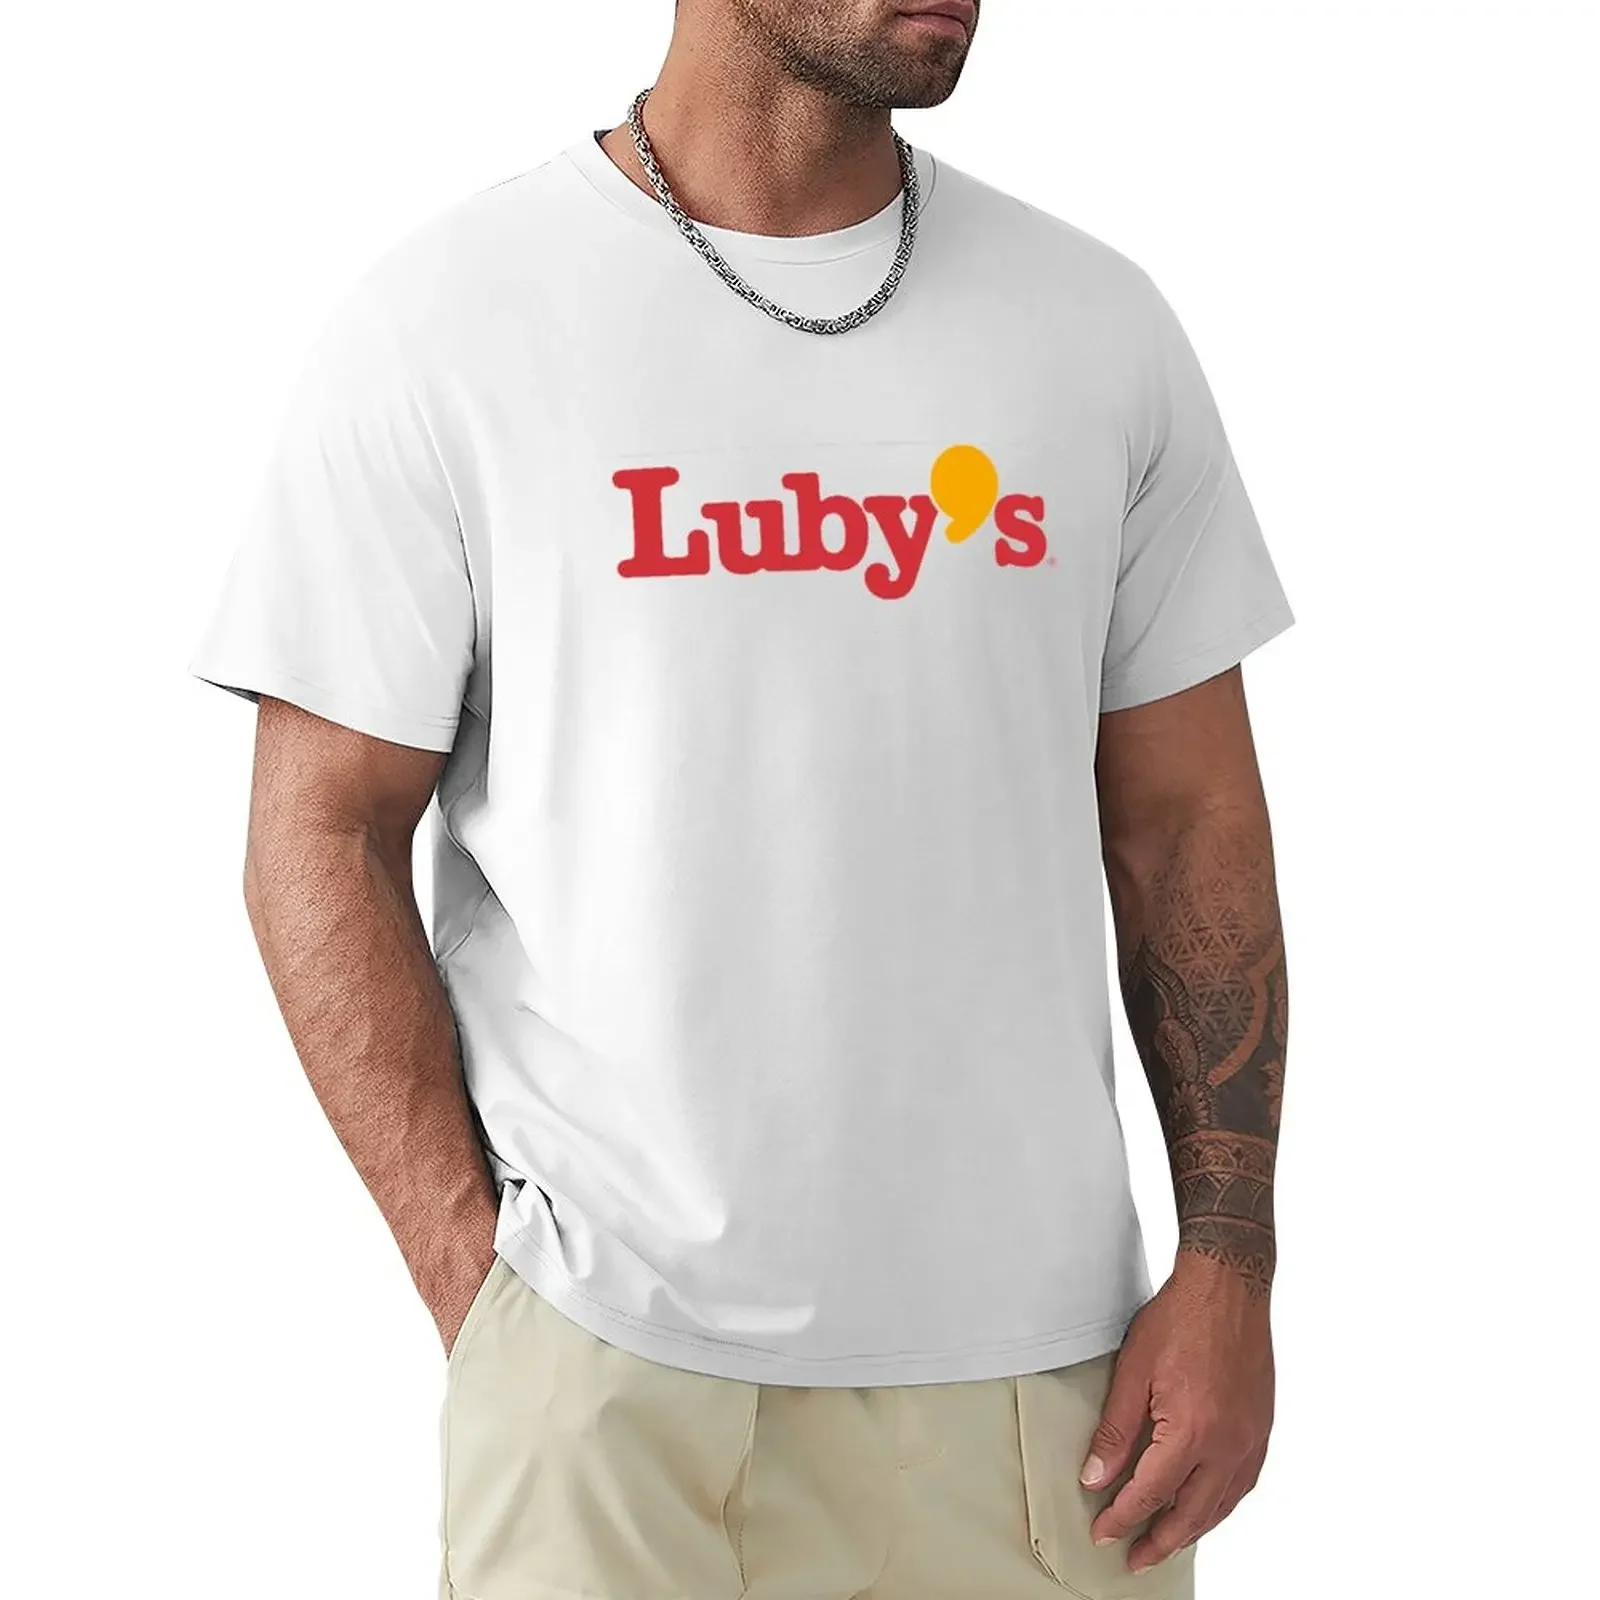 

Футболка Luby's с логотипом, рубашки с графическим рисунком, футболки на заказ, эстетическая одежда, принт с животными для мальчиков, мужские футболки больших и высоких размеров